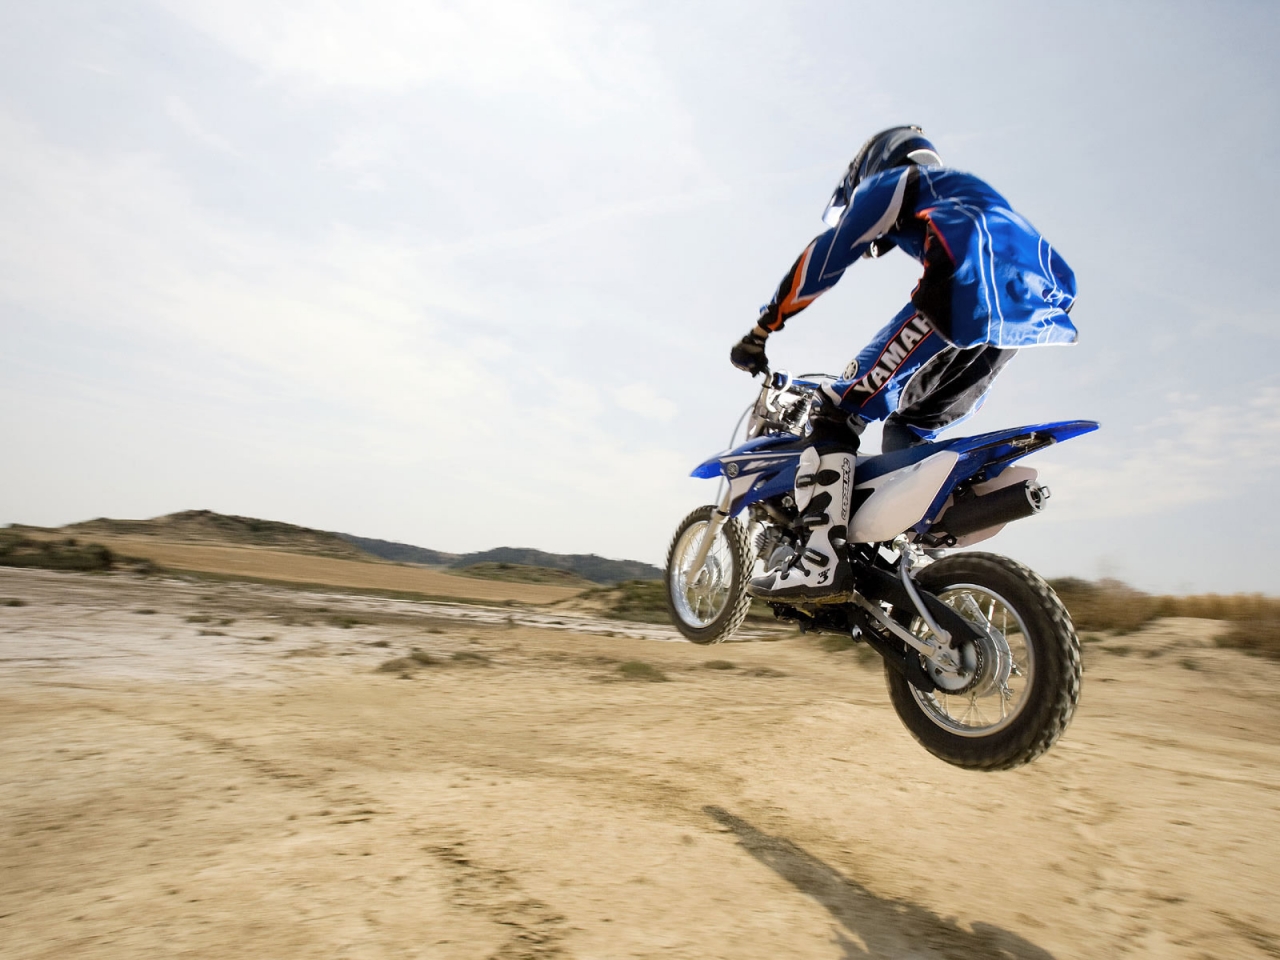 Desert Moto Race for 1280 x 960 resolution